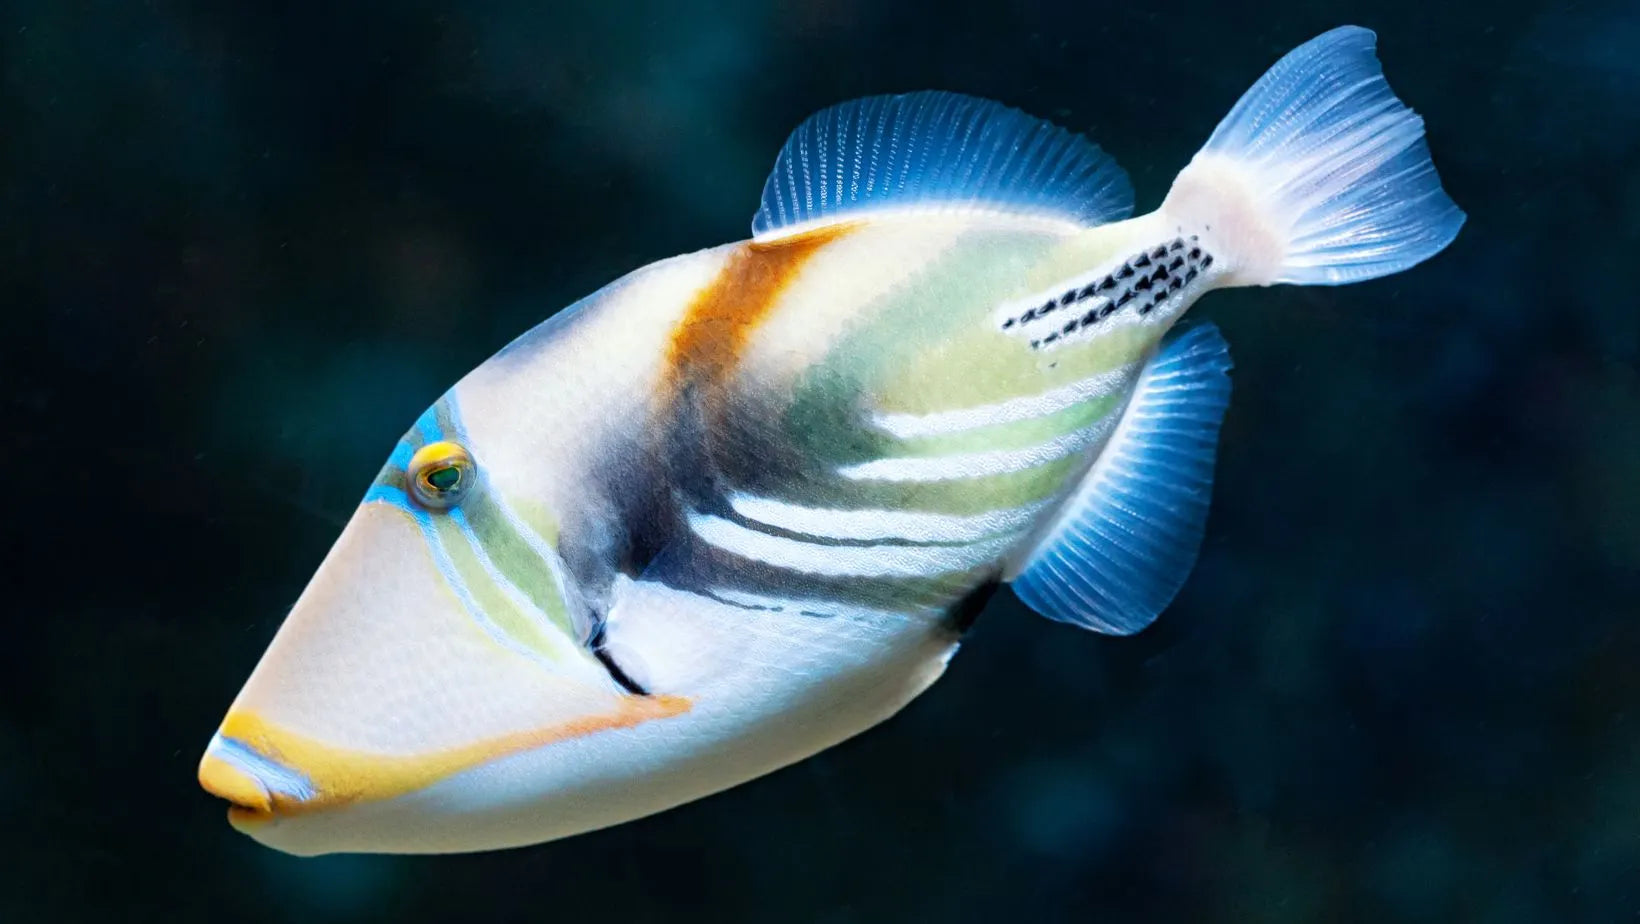 Pez ballesta Picasso, posiblemente el pez más especial del arrecife